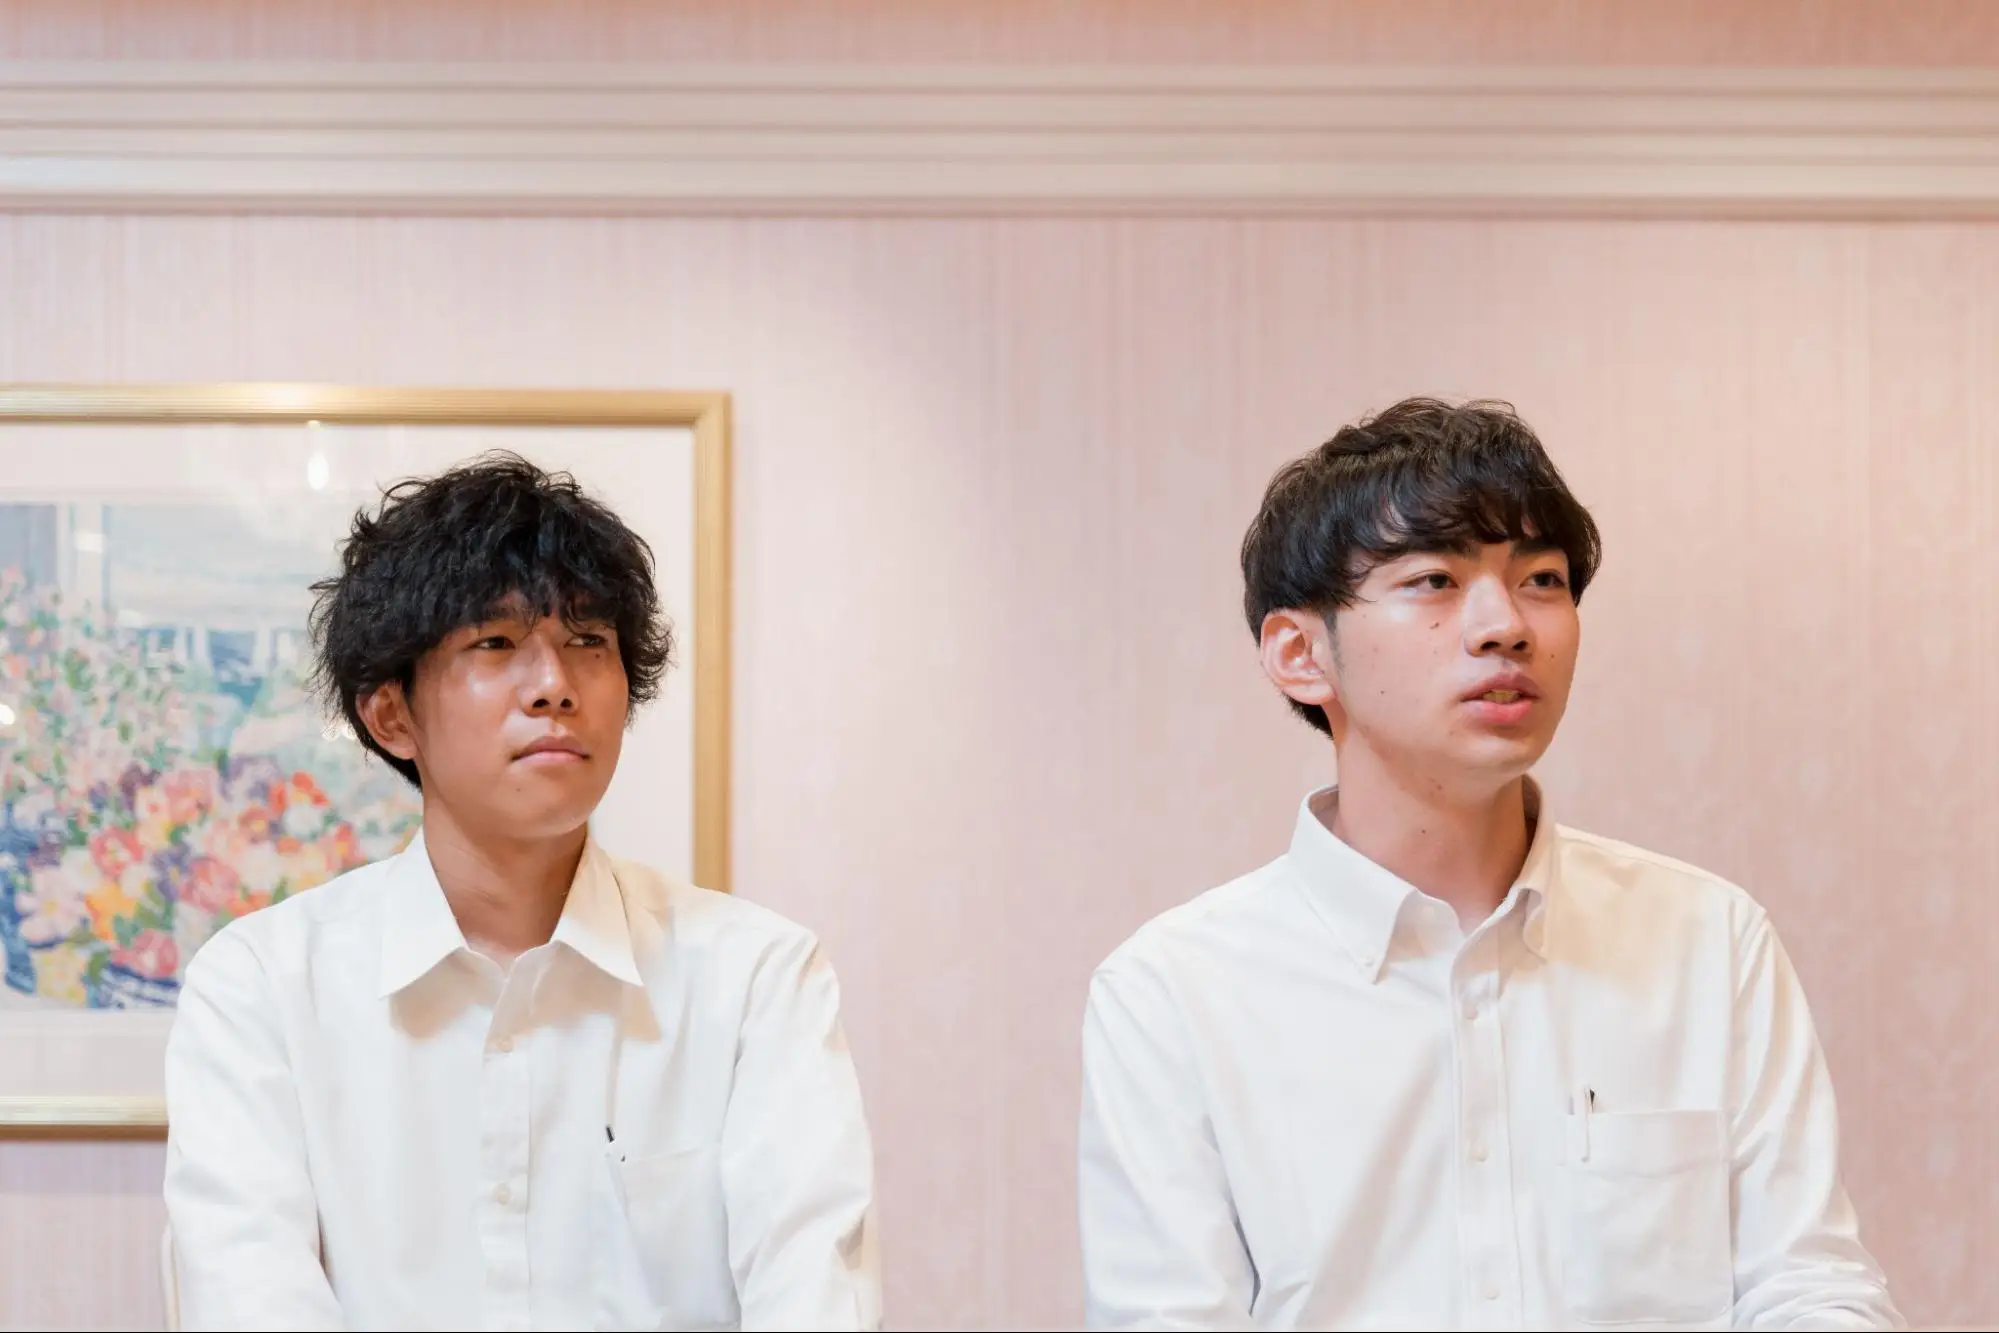 大学生の高橋 勇樹さん（写真左）星 光瑠さん（写真右 ）は、高校の同級生。星さんが誘って、2人で本研修会に参加